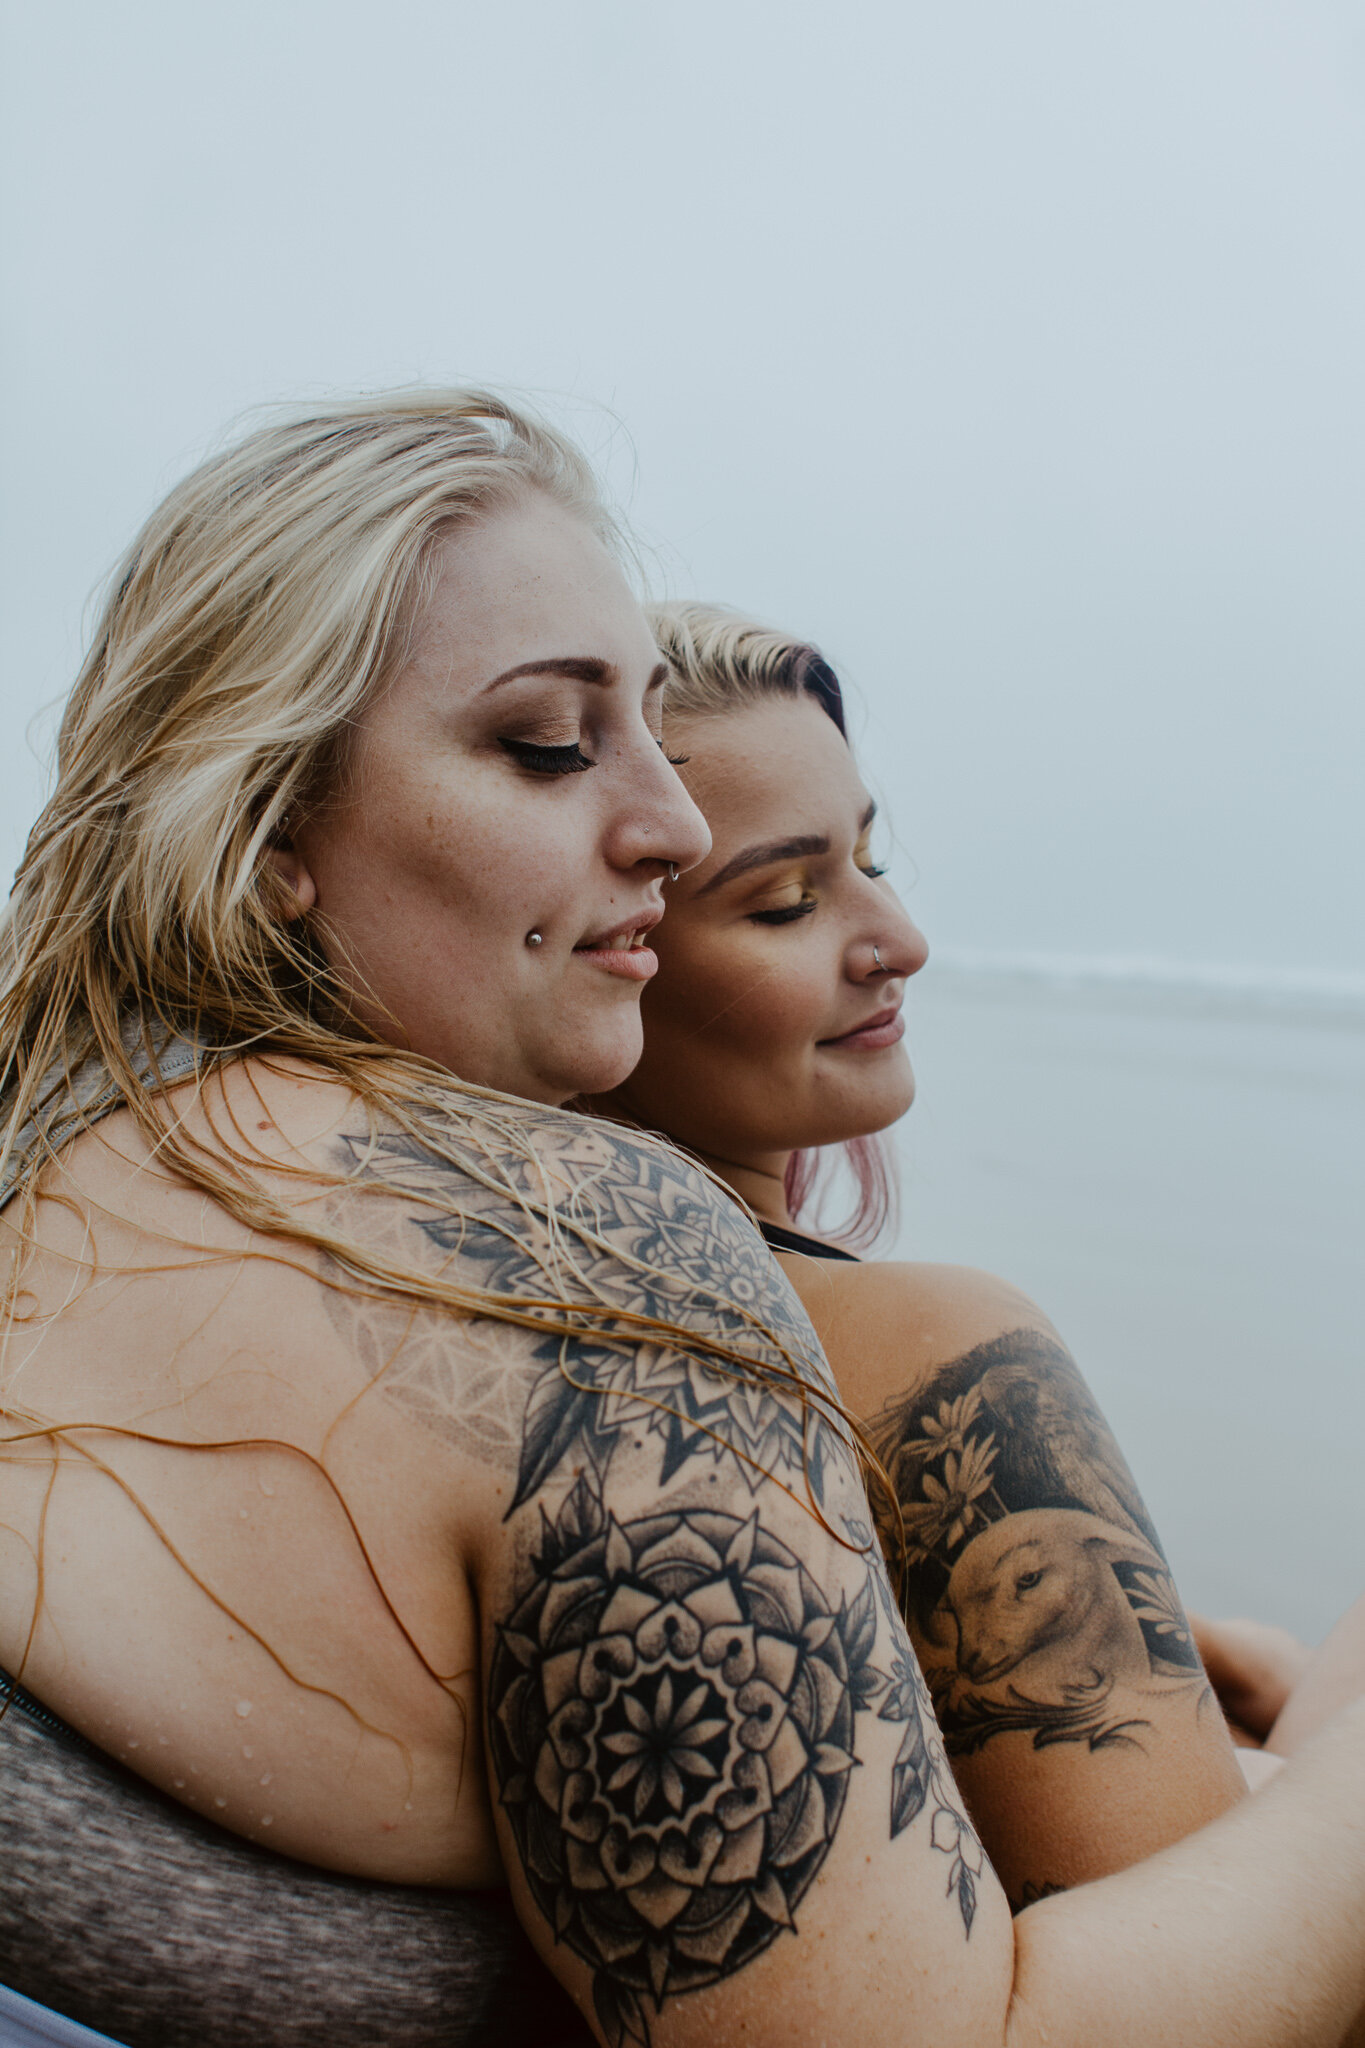 LGBTQ+ couple at beach